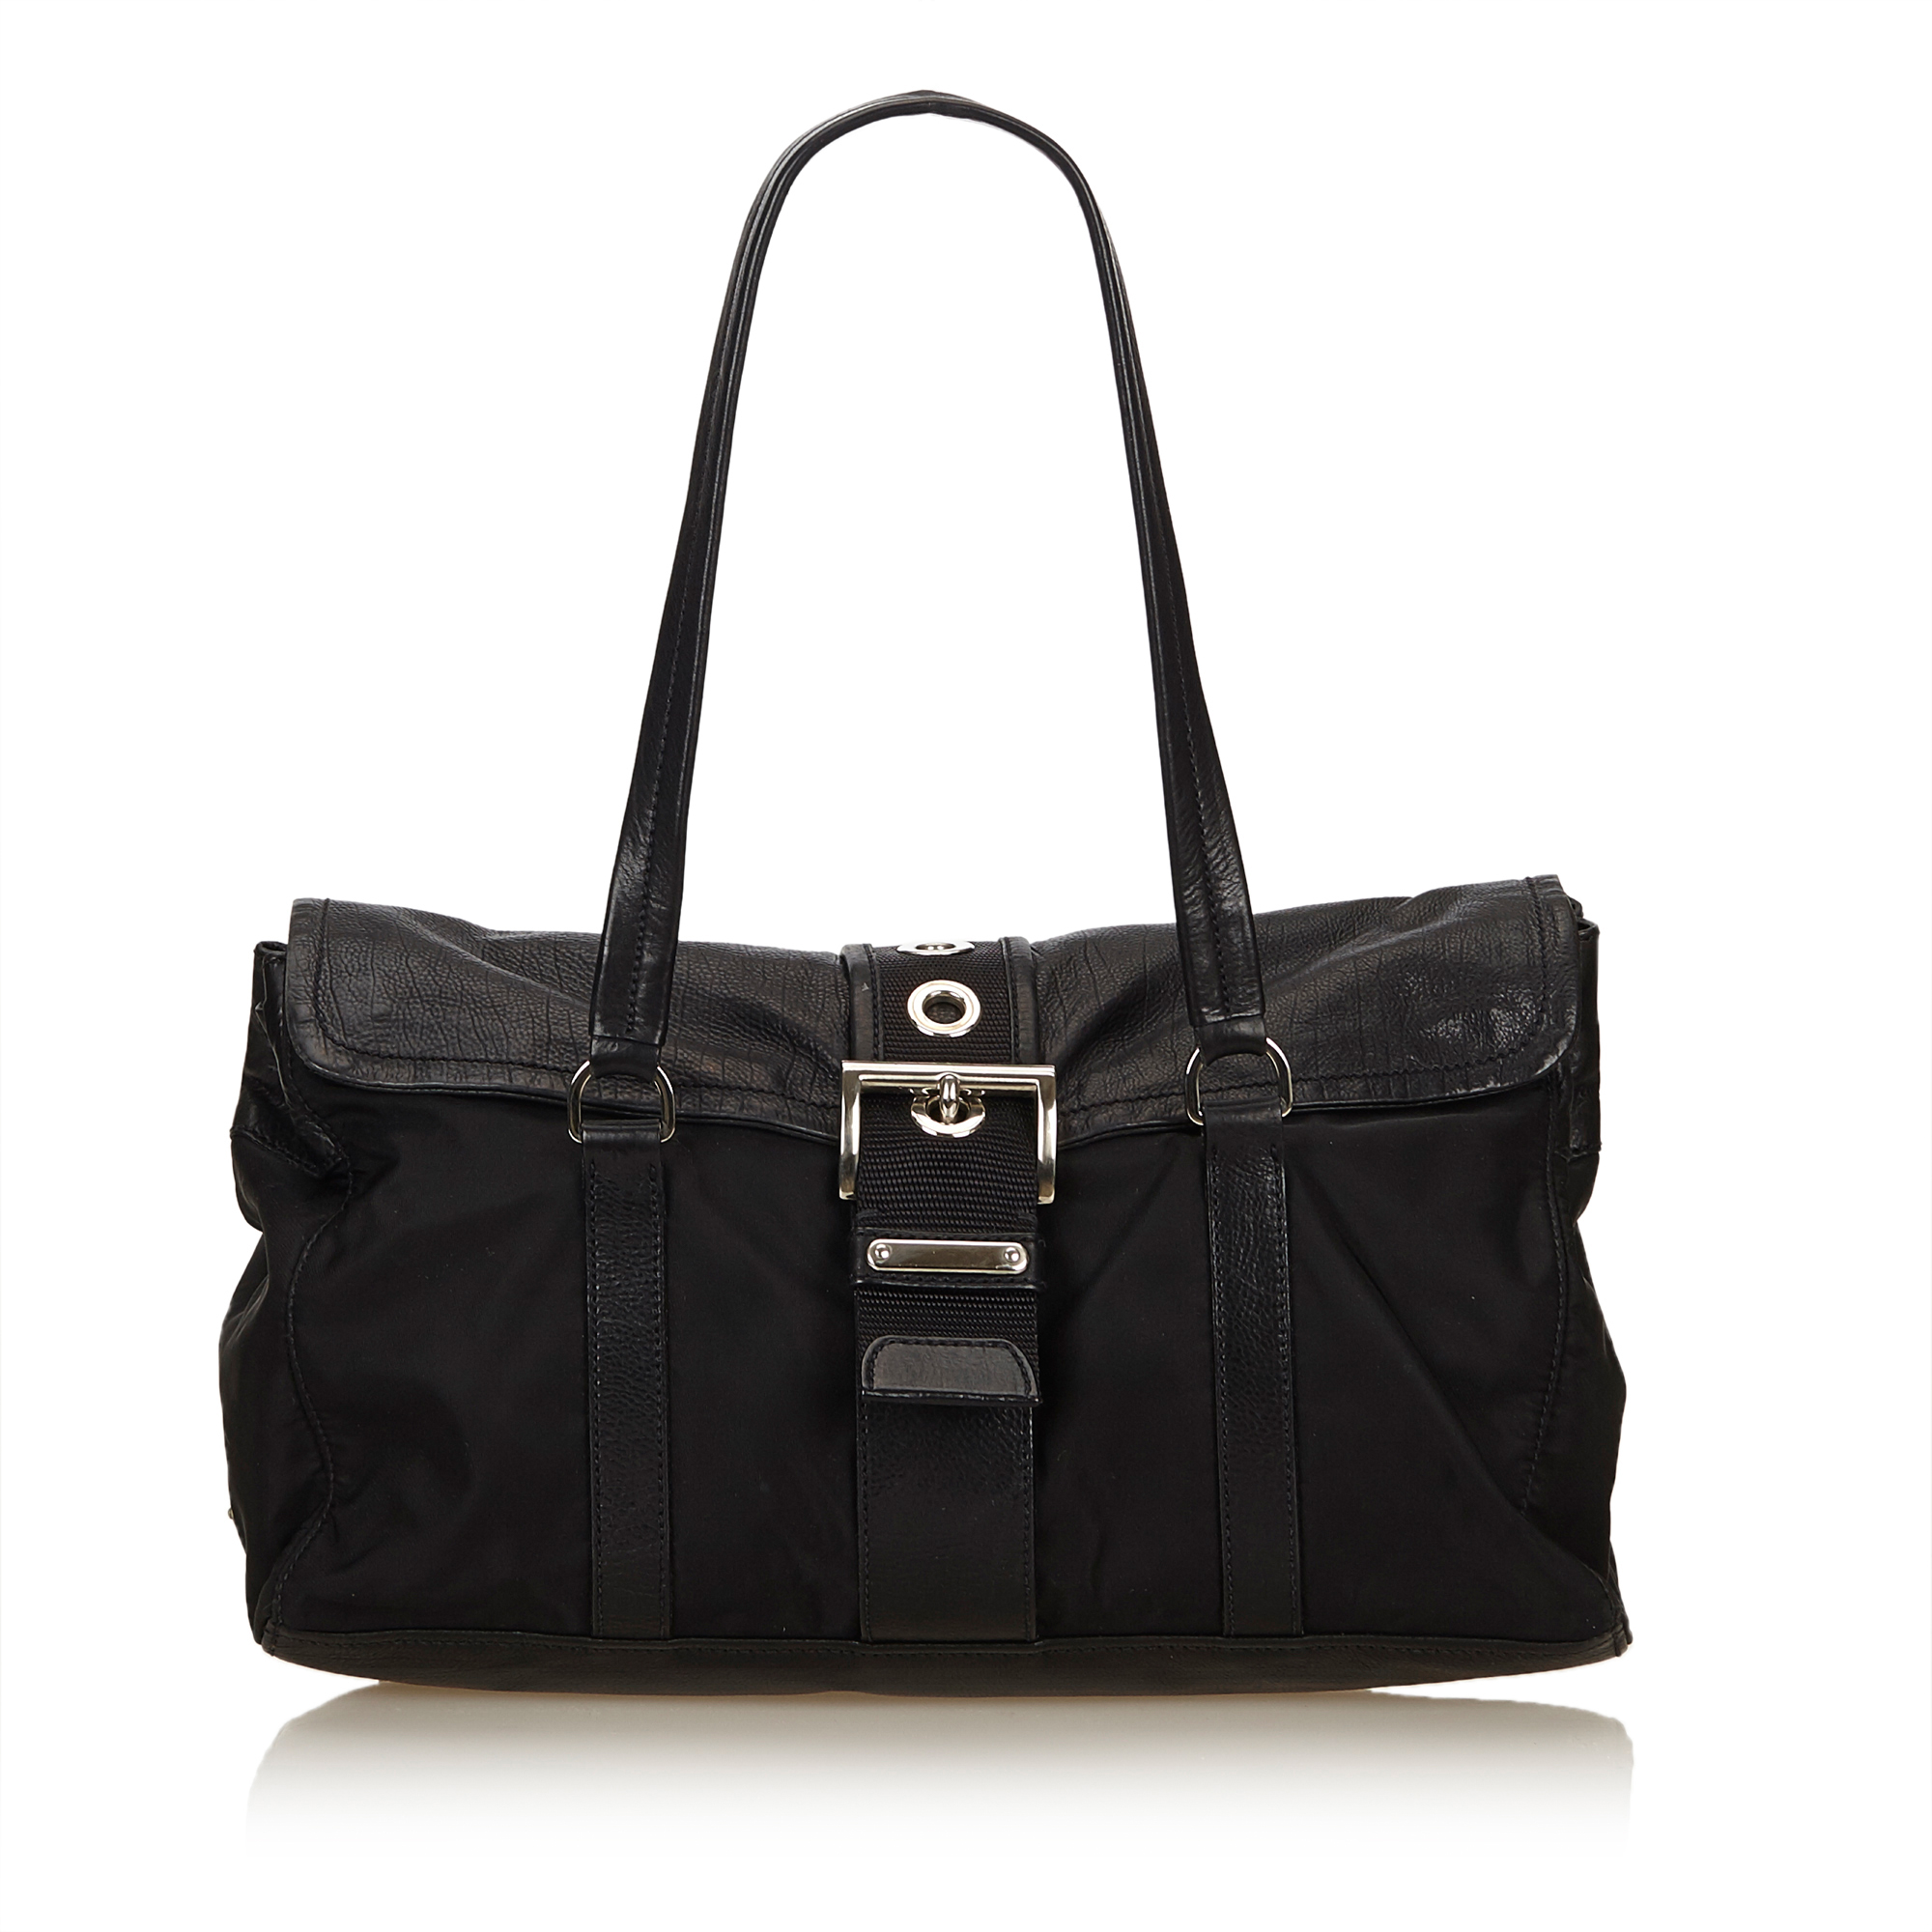 Pre-Loved Prada Black Nylon Fabric Shoulder Bag Italy | eBay